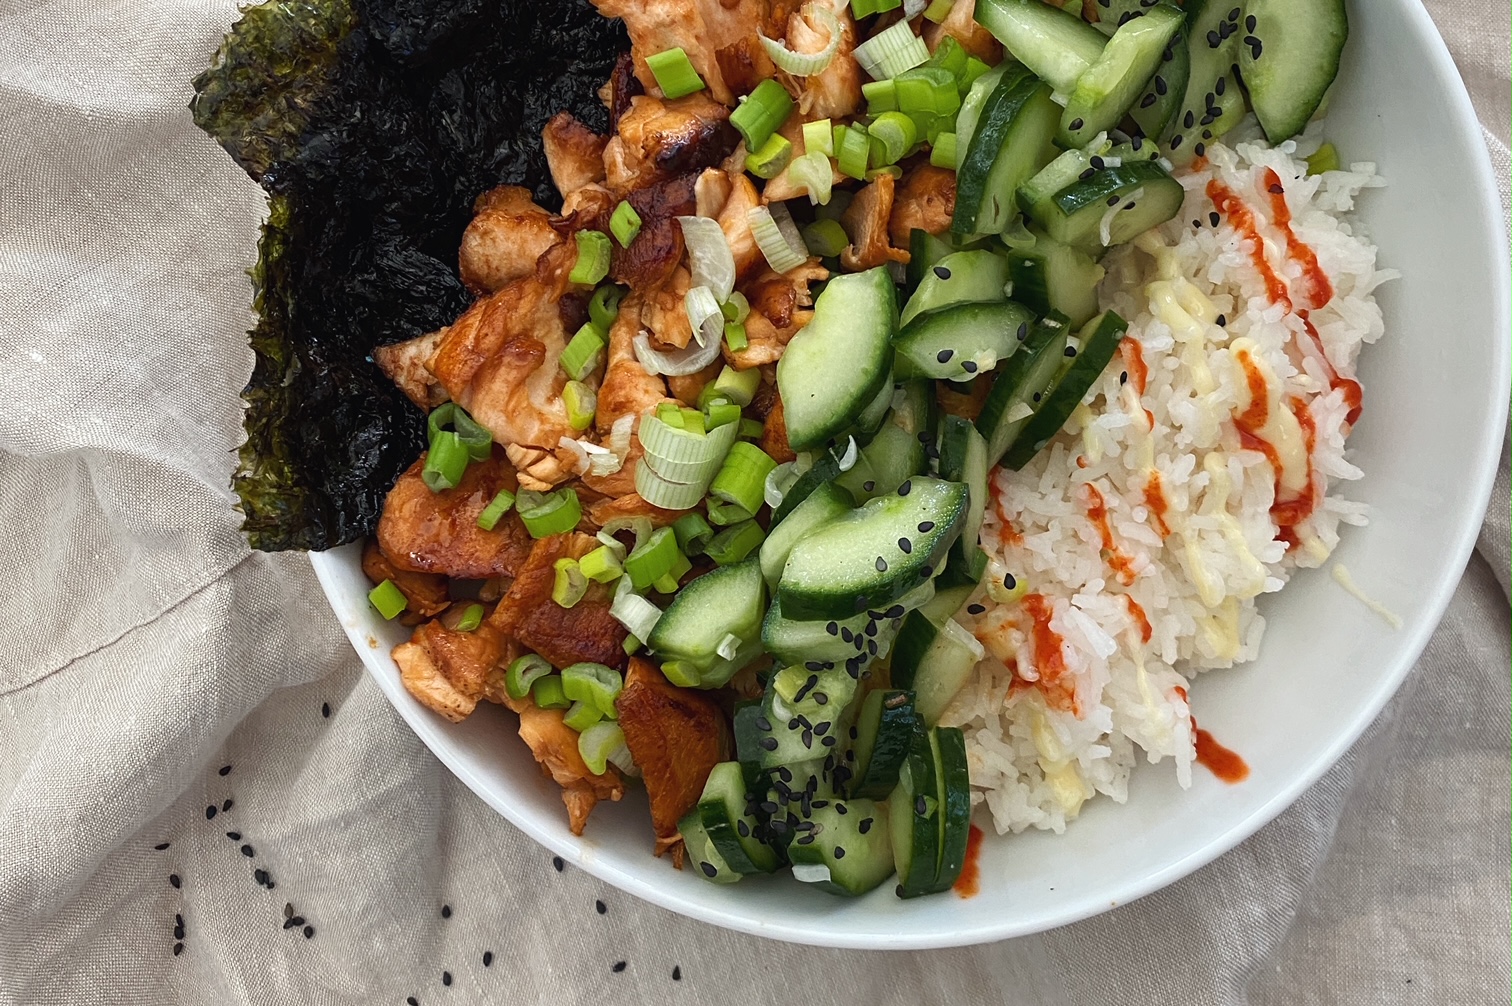 Lachs-Bowl mit Reis und Gurkensalat - von oben fotografiert auf einer beigen Leinentischdecke